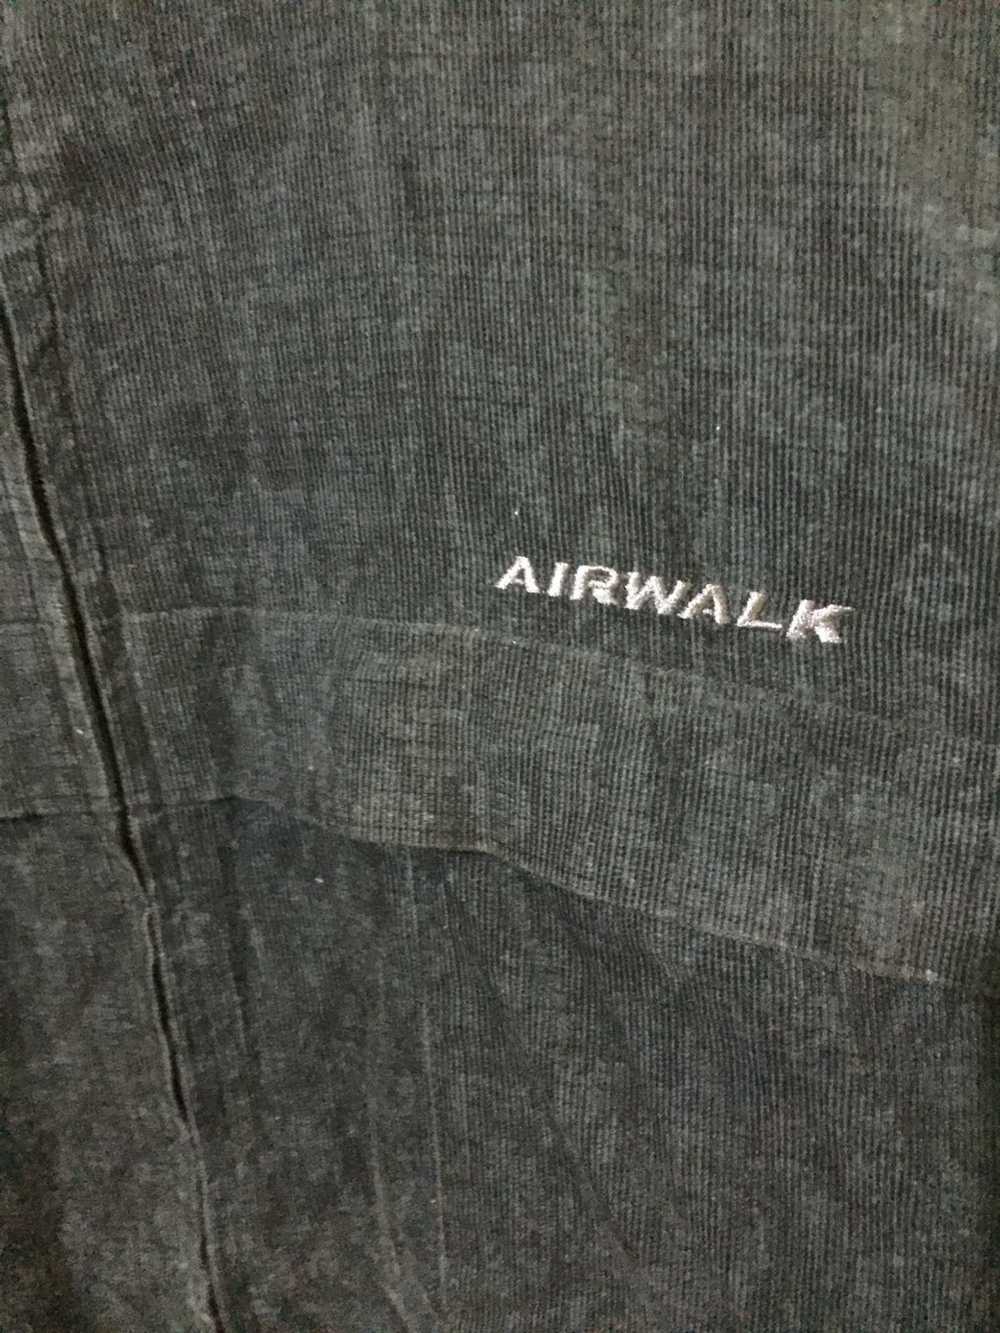 Airwalk × Japanese Brand × Streetwear Vintage Kud… - image 3